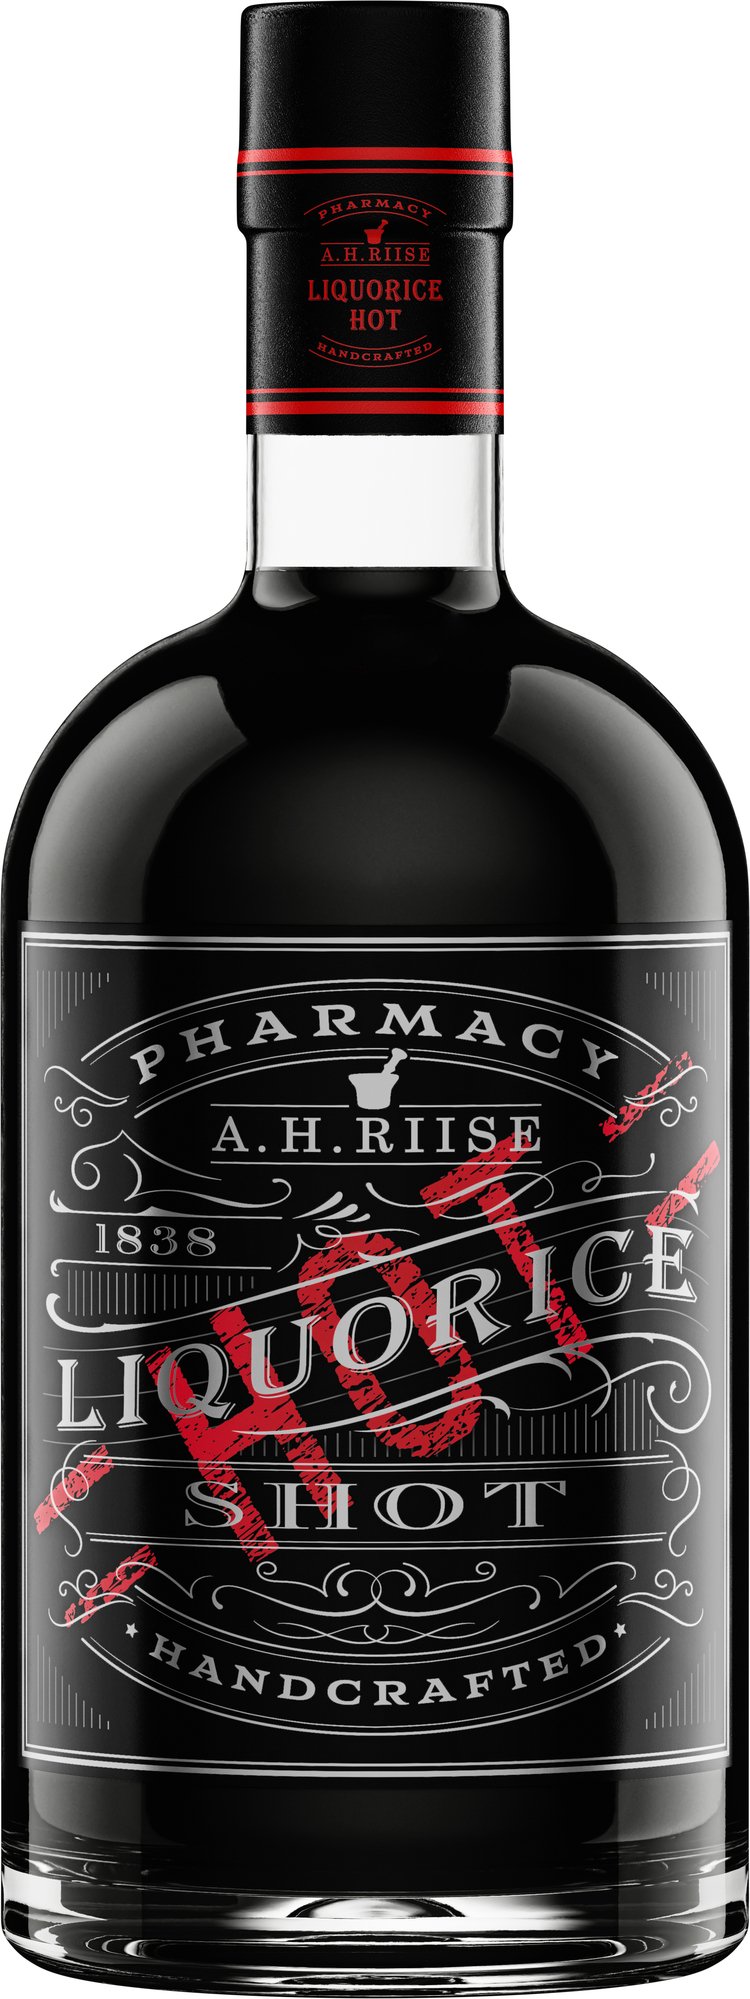 A.H. Riise Pharmacy Liquorice Hot Shot 18% 0,7l (čistá fľaša)